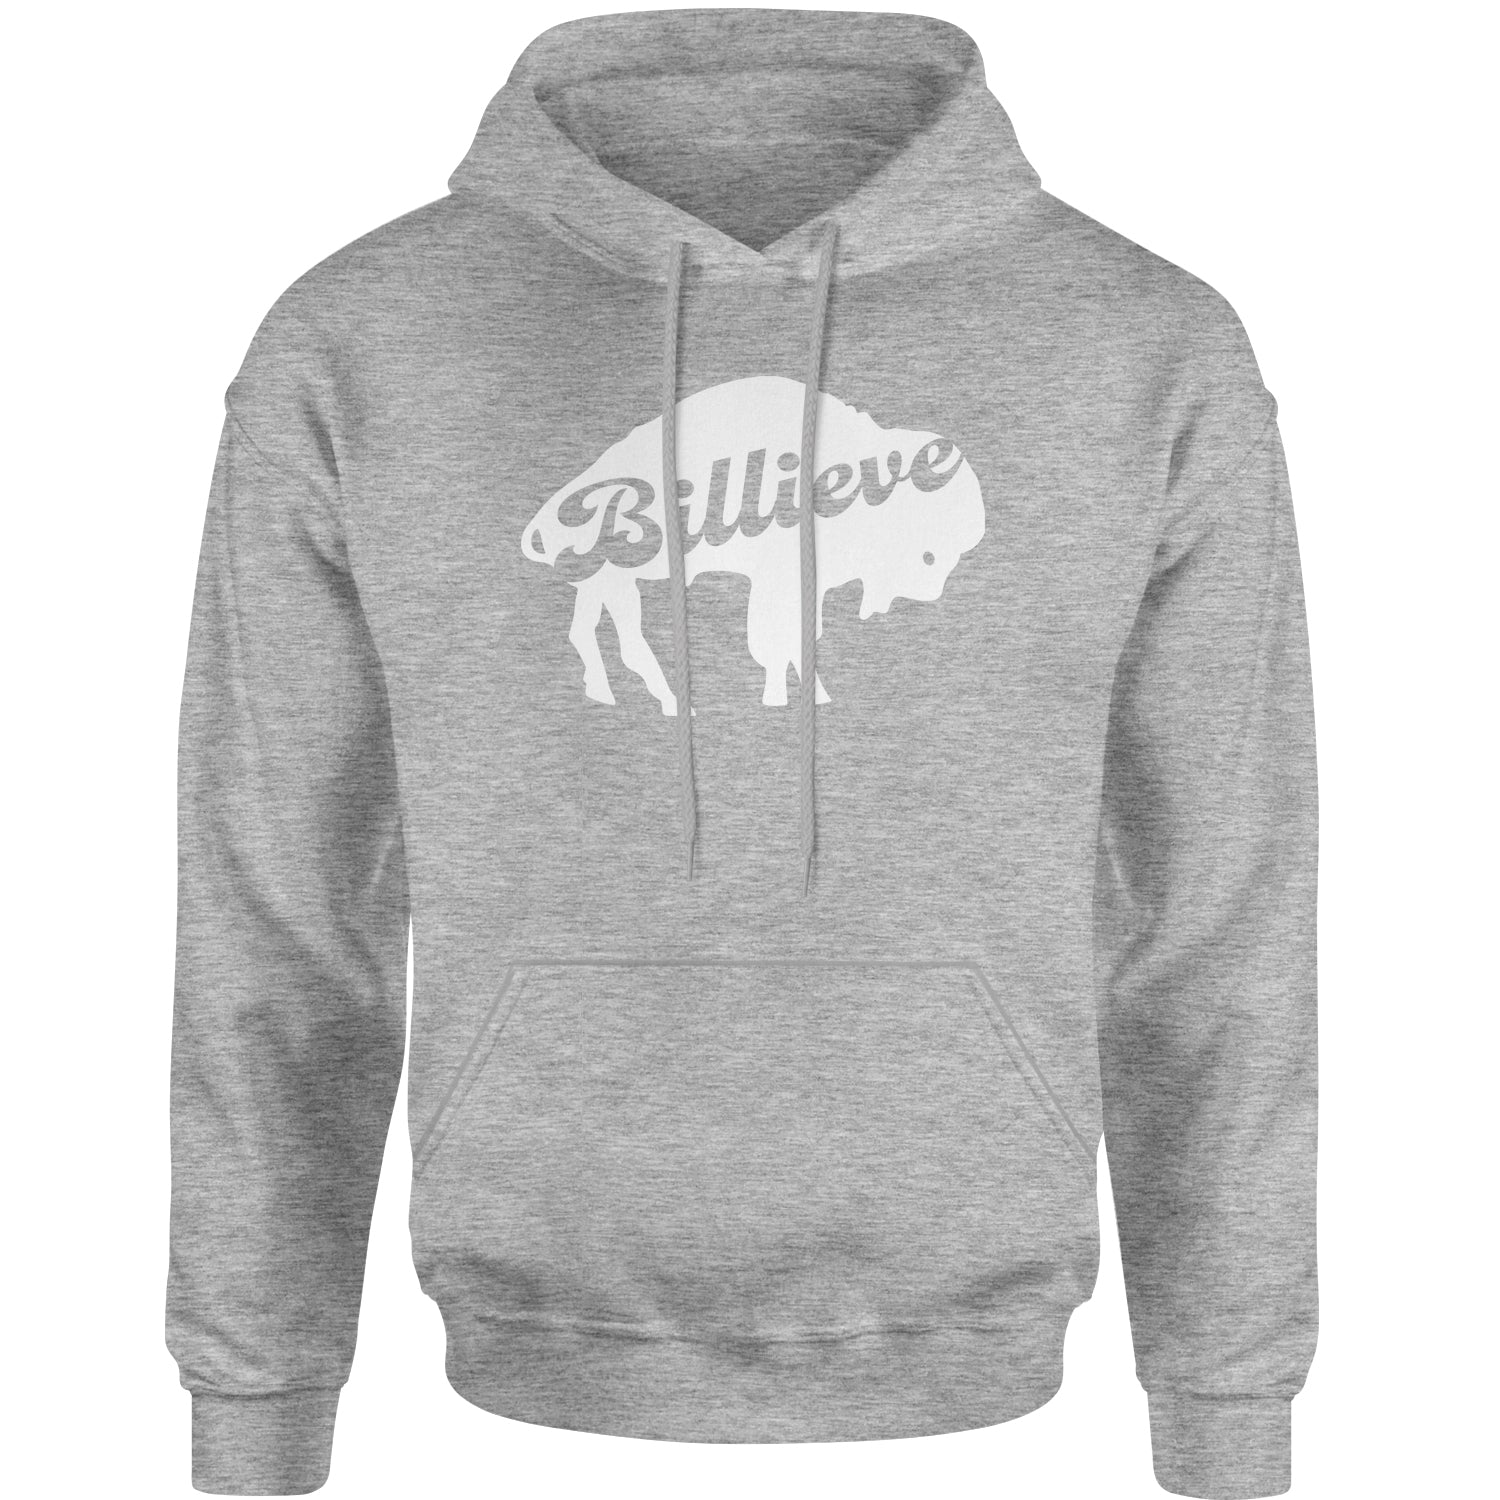 Billieve Bills Mafia Adult Hoodie Sweatshirt bills, fan, father, football, god, godfather, new, sports, team, york by Expression Tees